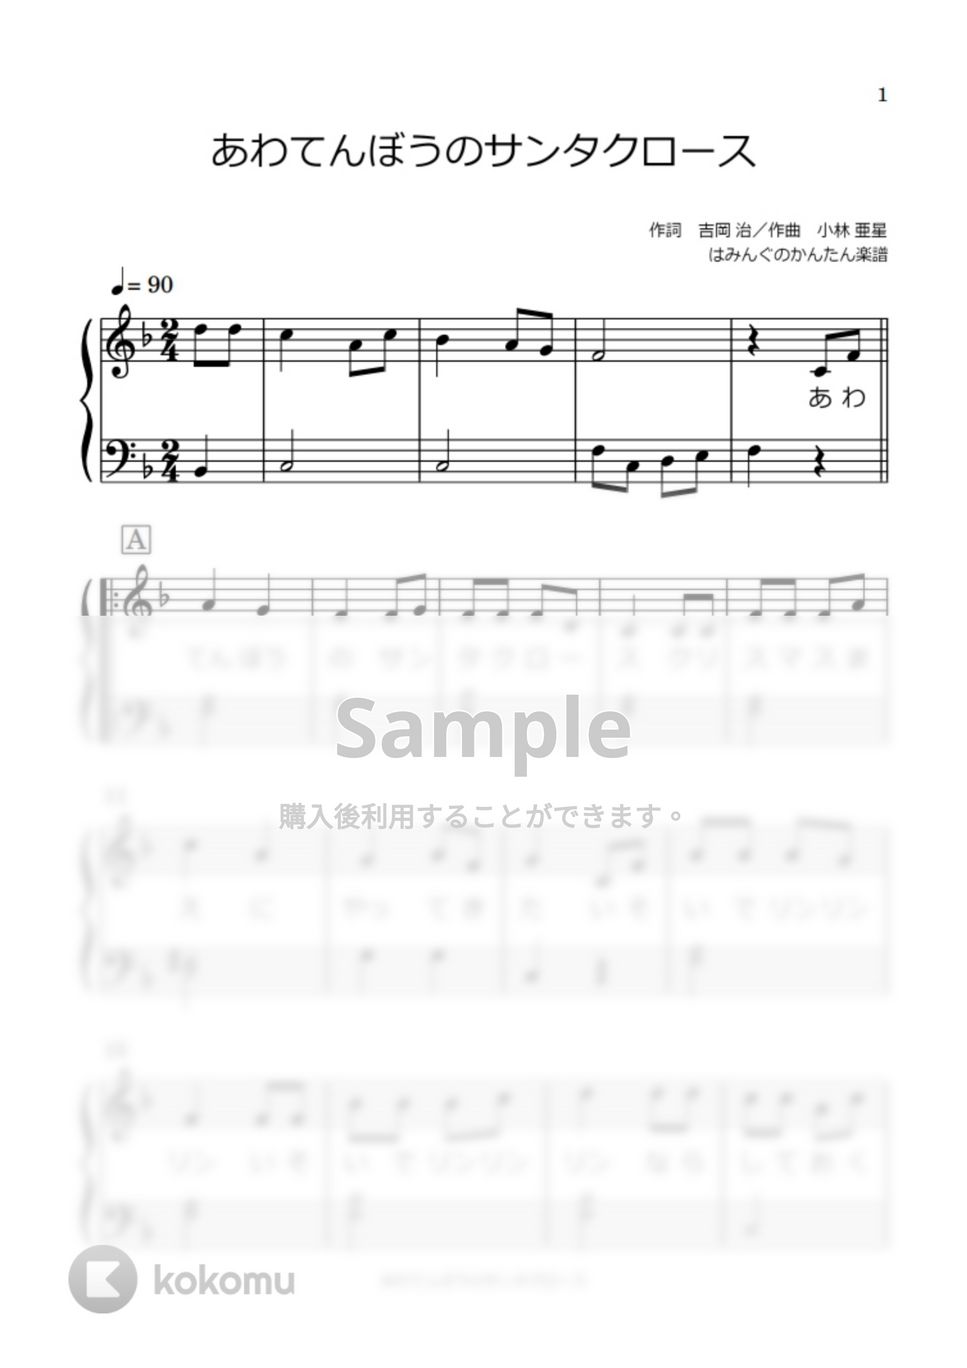 あわてんぼうのサンタクロース (歌詞付き) by はみんぐのかんたん楽譜